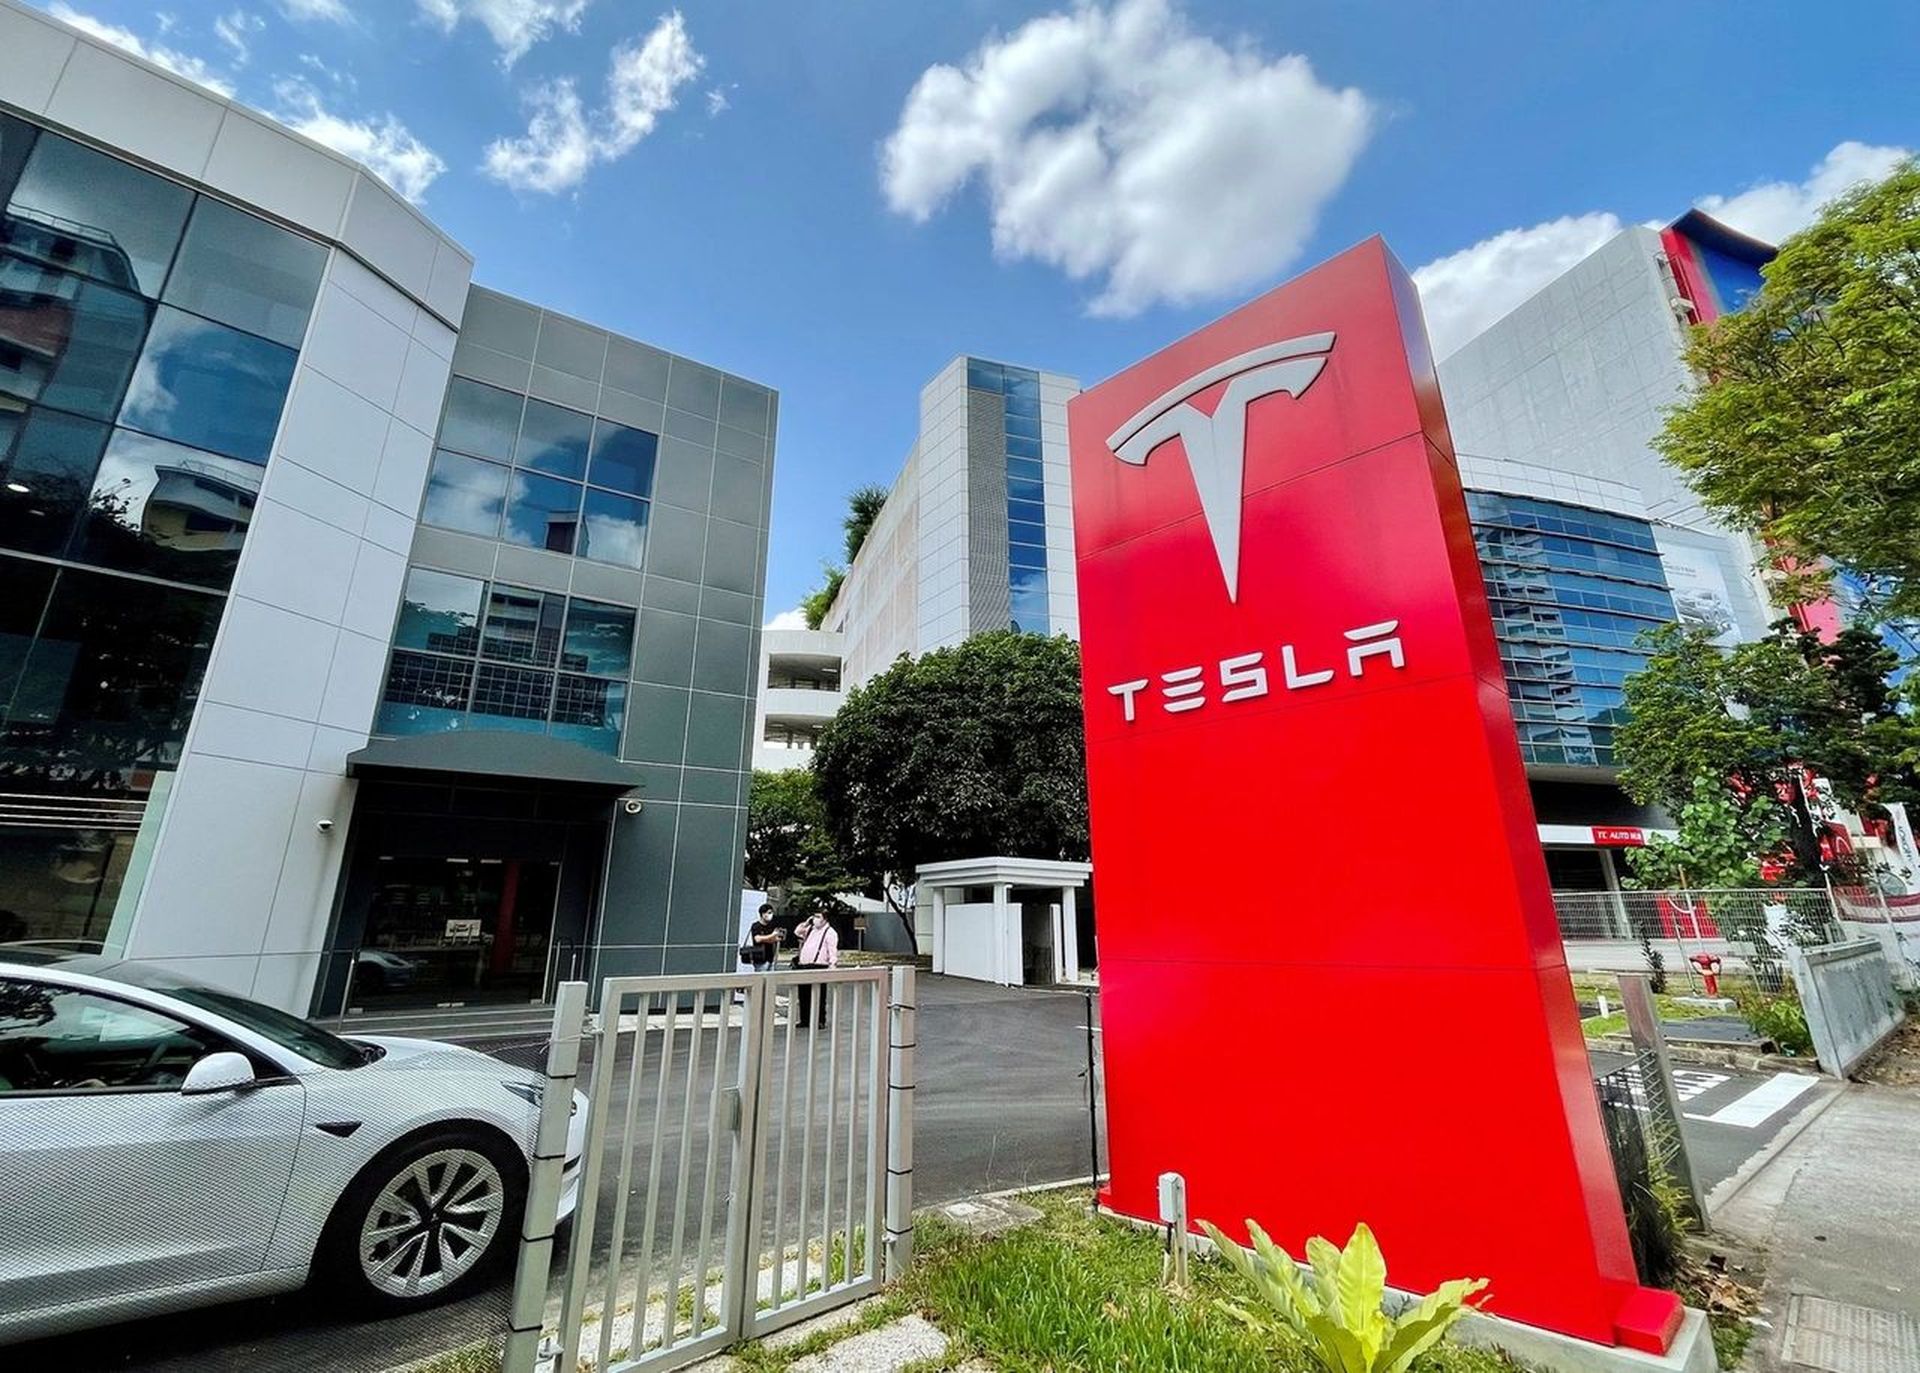 Hoje, estamos abordando como assistir à reunião de acionistas da Tesla 2022, para que você possa saber quais decisões serão tomadas que afetarão o futuro da empresa.